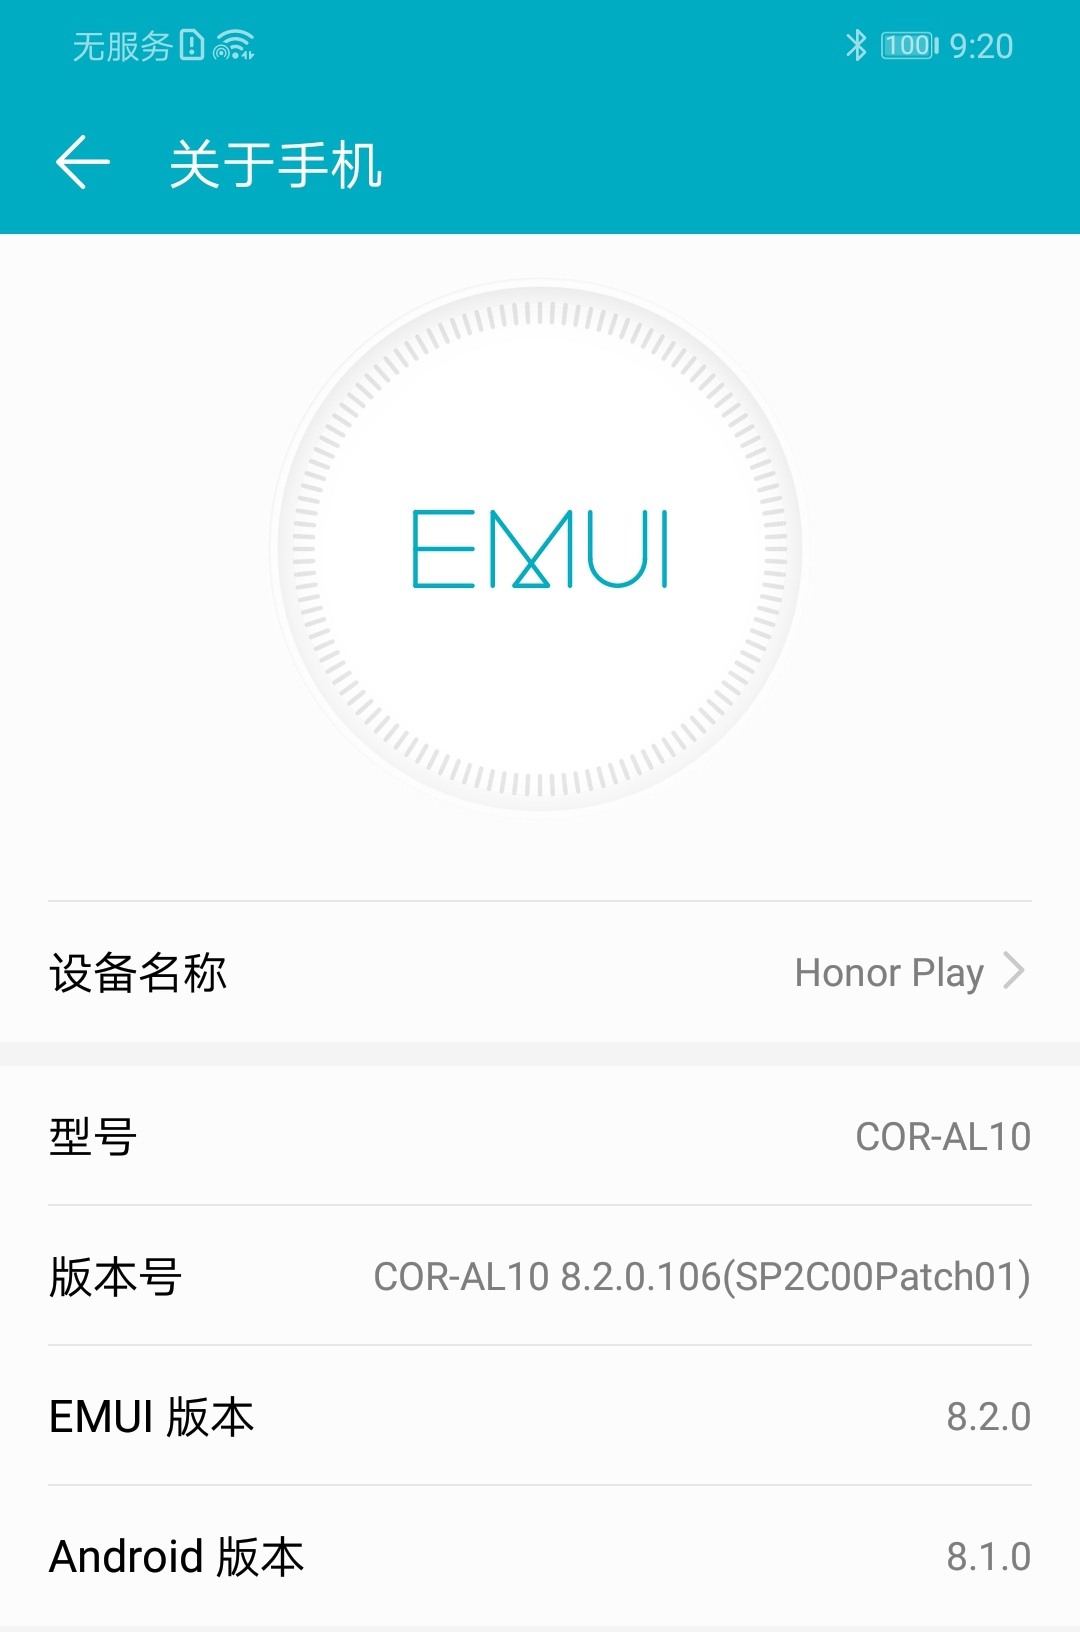 EMUI 8.2确实太功能强大了，不相信感受一把荣誉Play看一下！